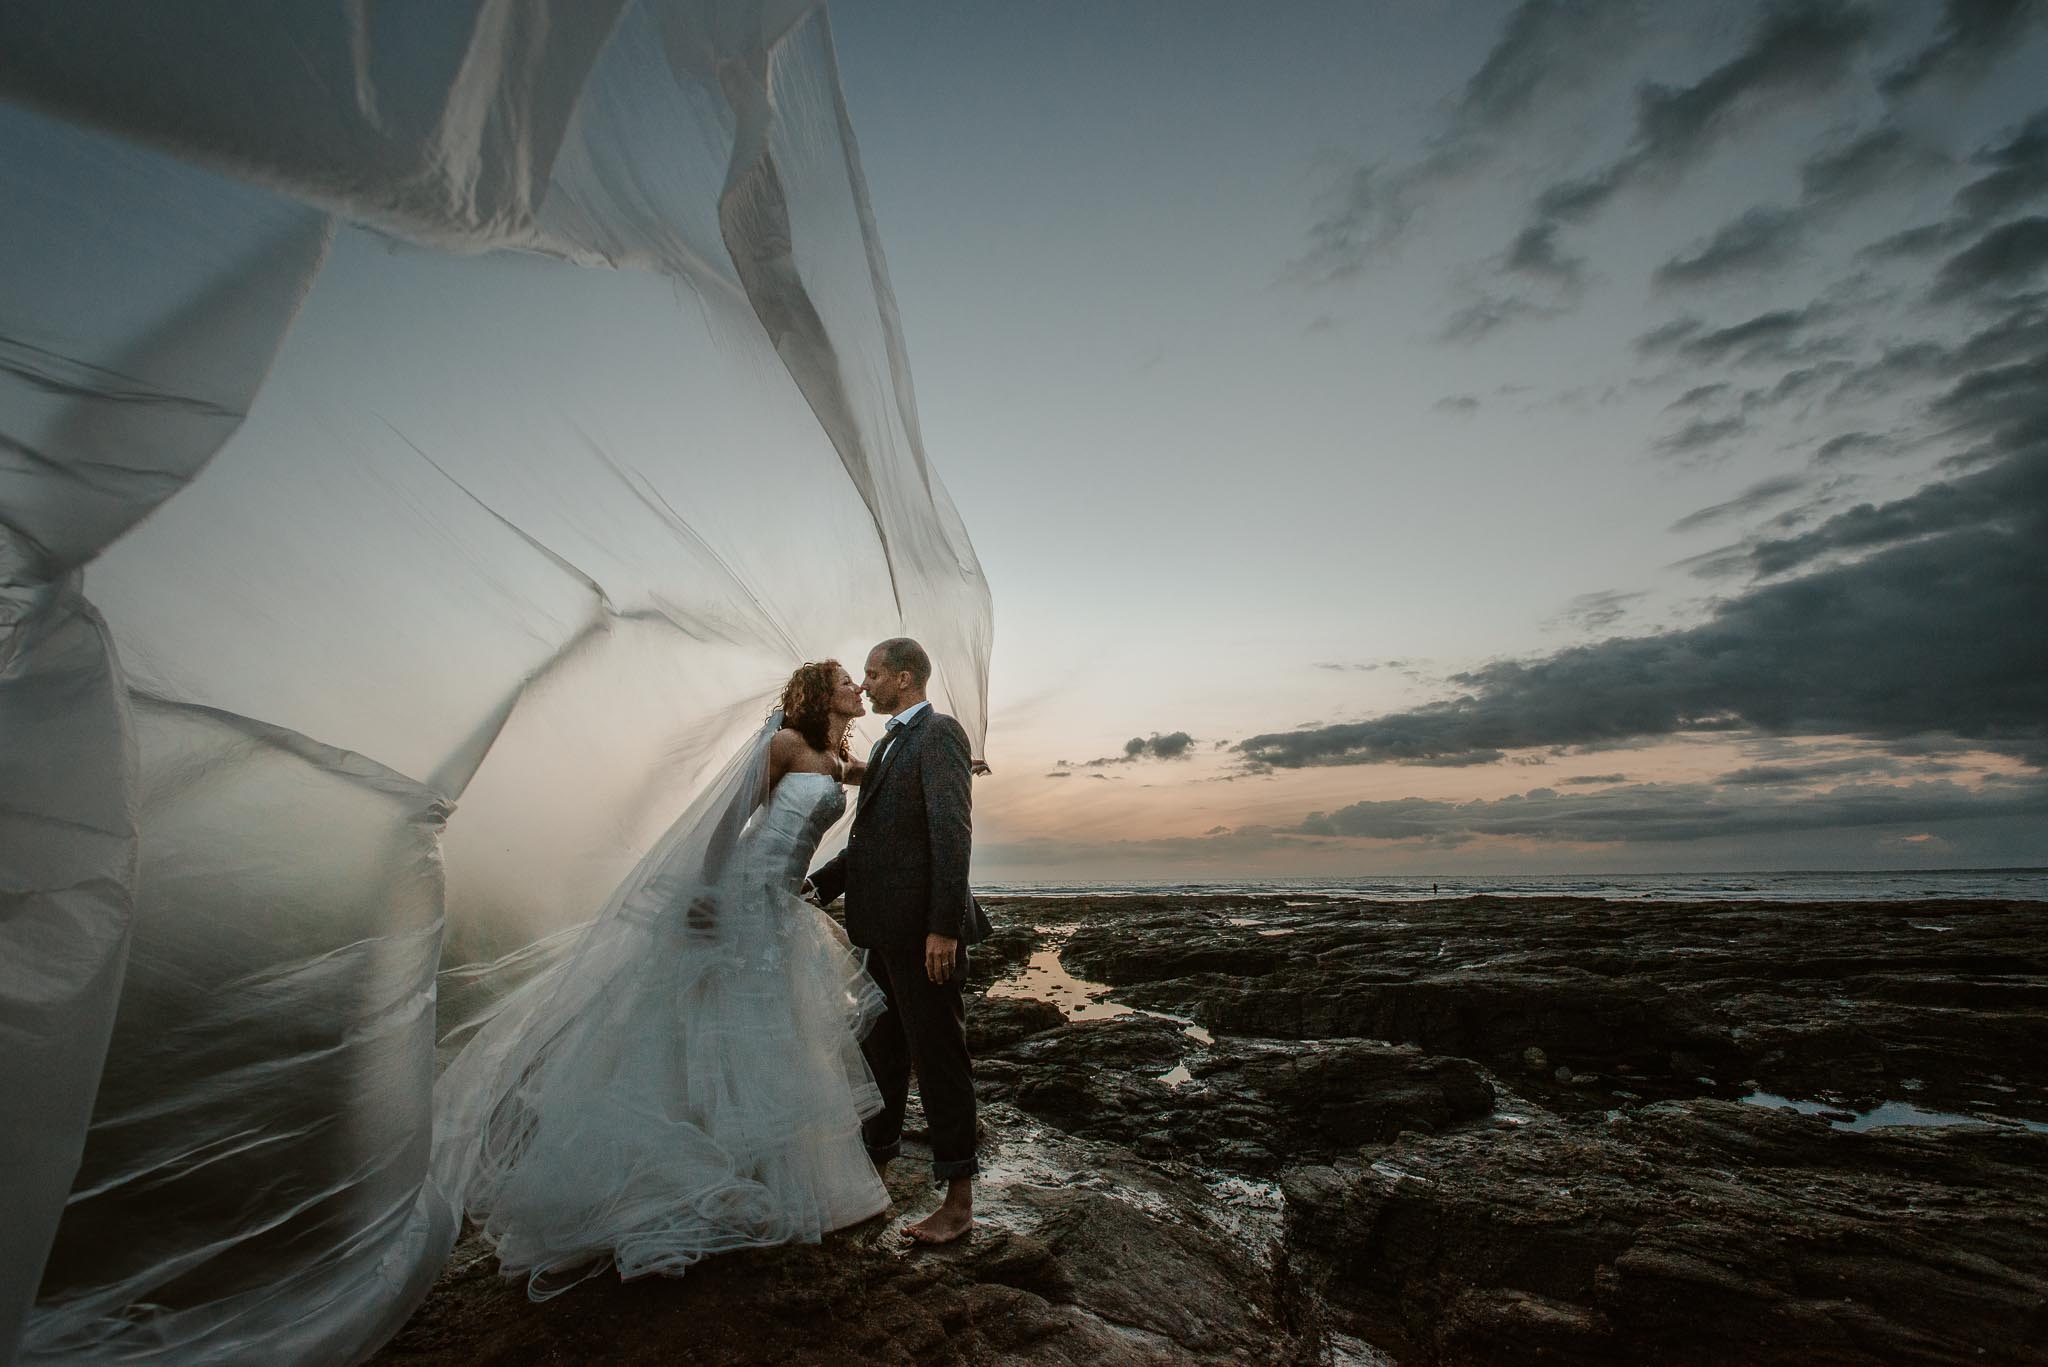 Séance couple artistique après mariage onirique & poétique sur la plage au bord de l’Océan près de la Baule par Geoffrey Arnoldy photographe